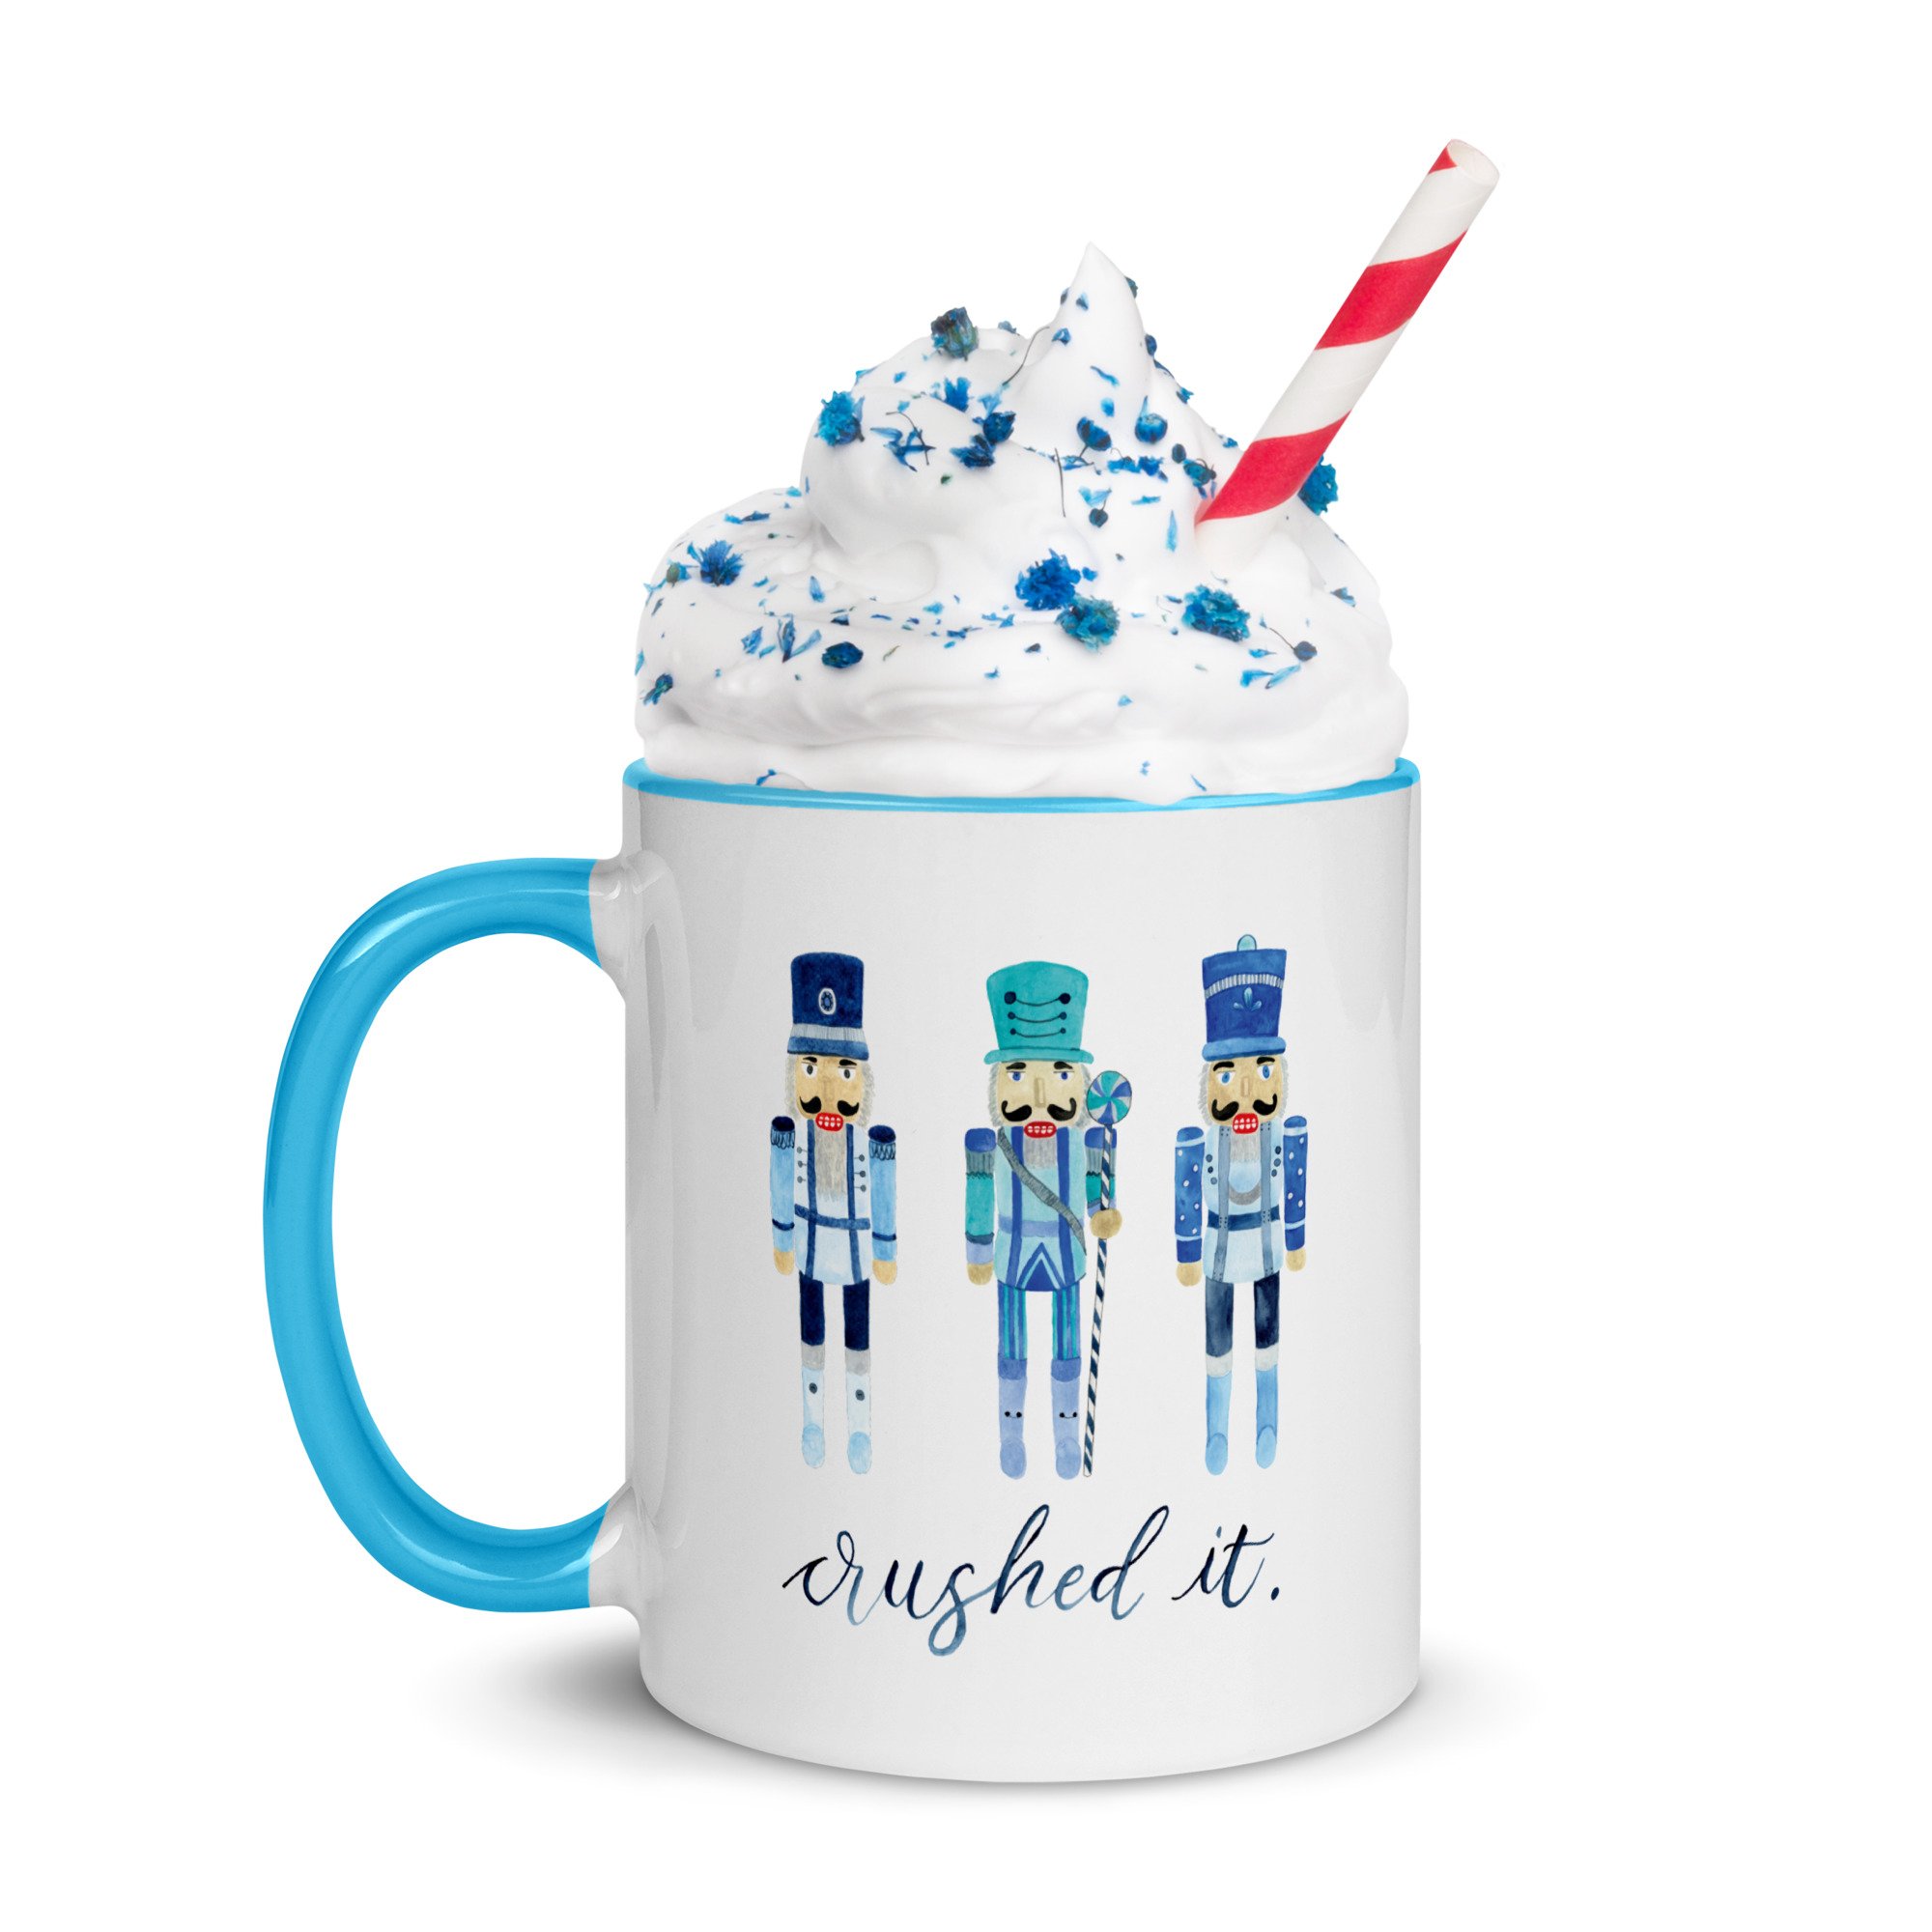 white-ceramic-mug-with-color-inside-blue-11oz-left-638ec9cf1223a.jpg